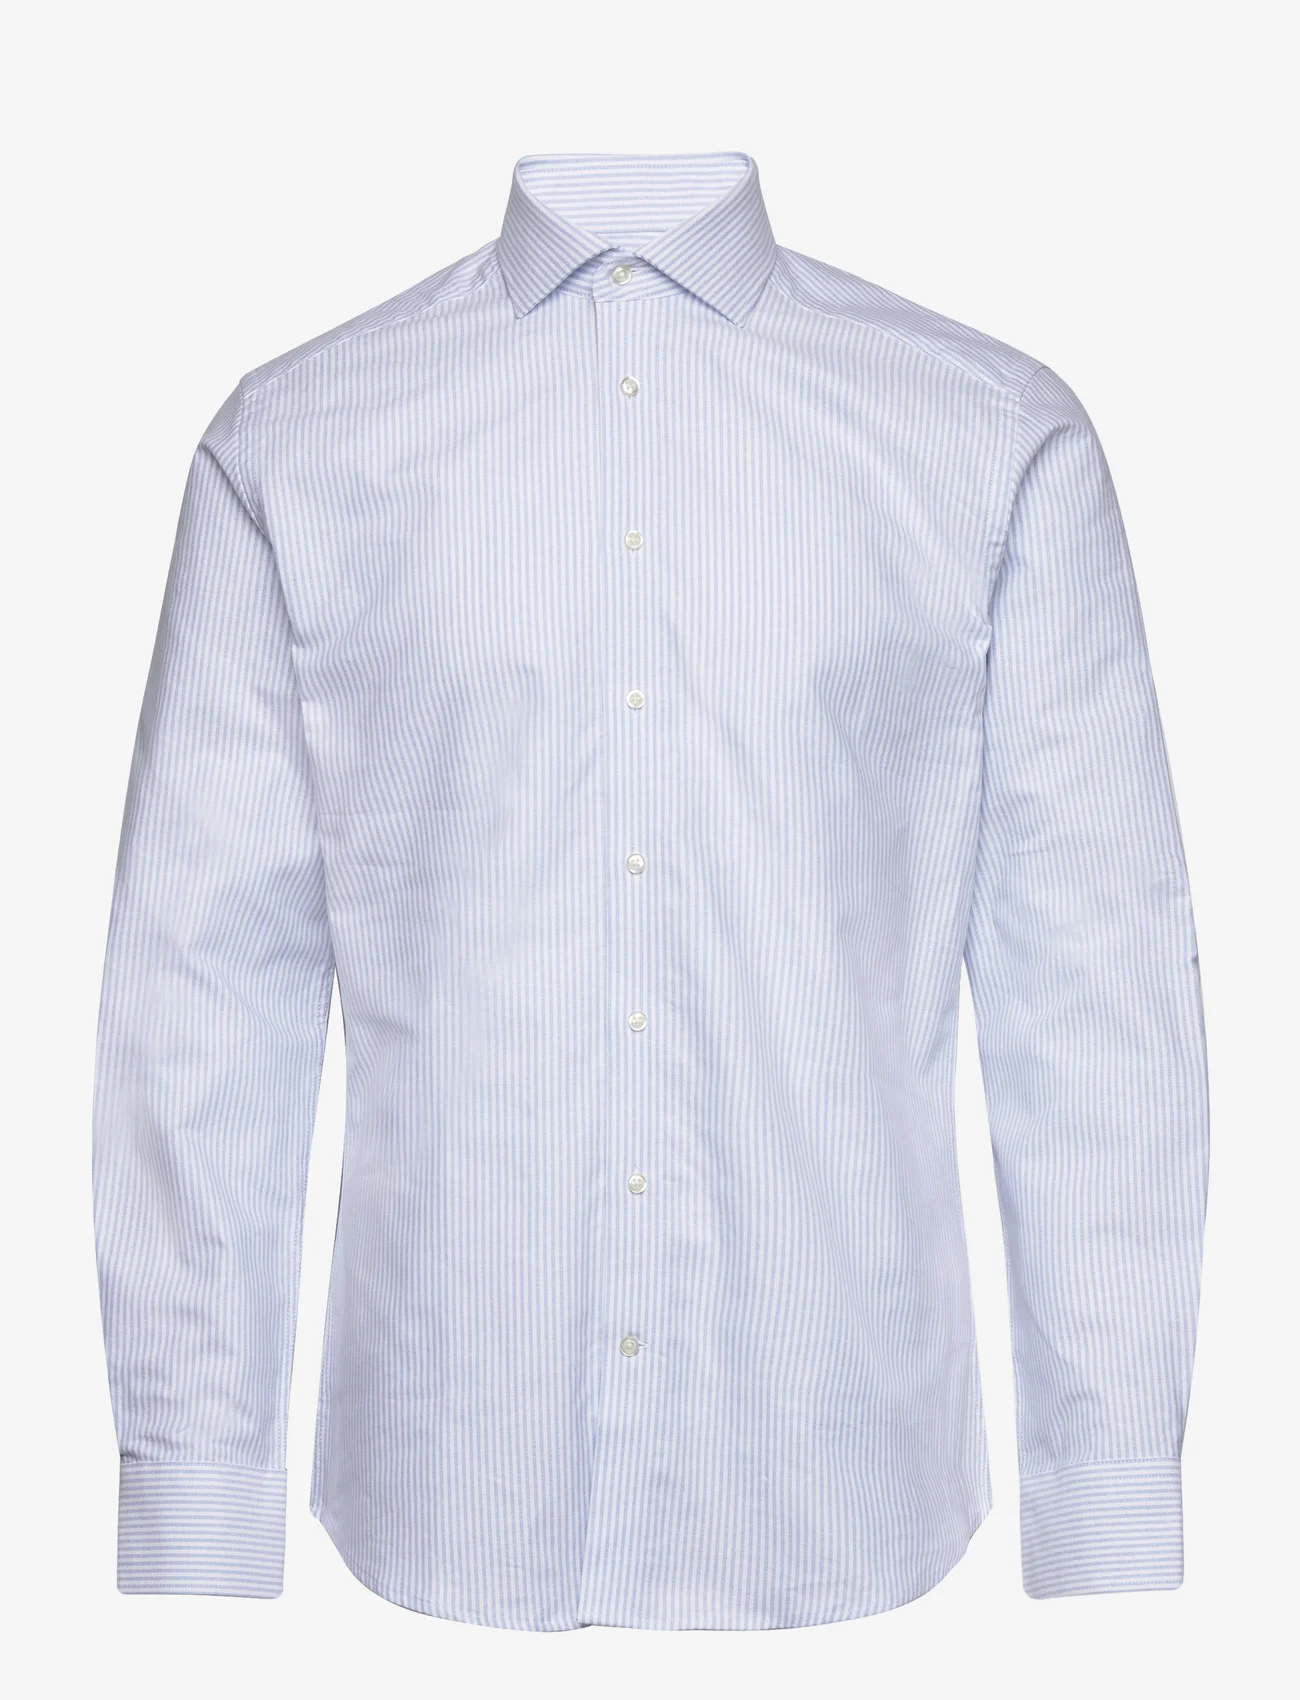 Bruun & Stengade - BS Thompson Slim Fit Shirt - basic skjorter - light blue/white - 0